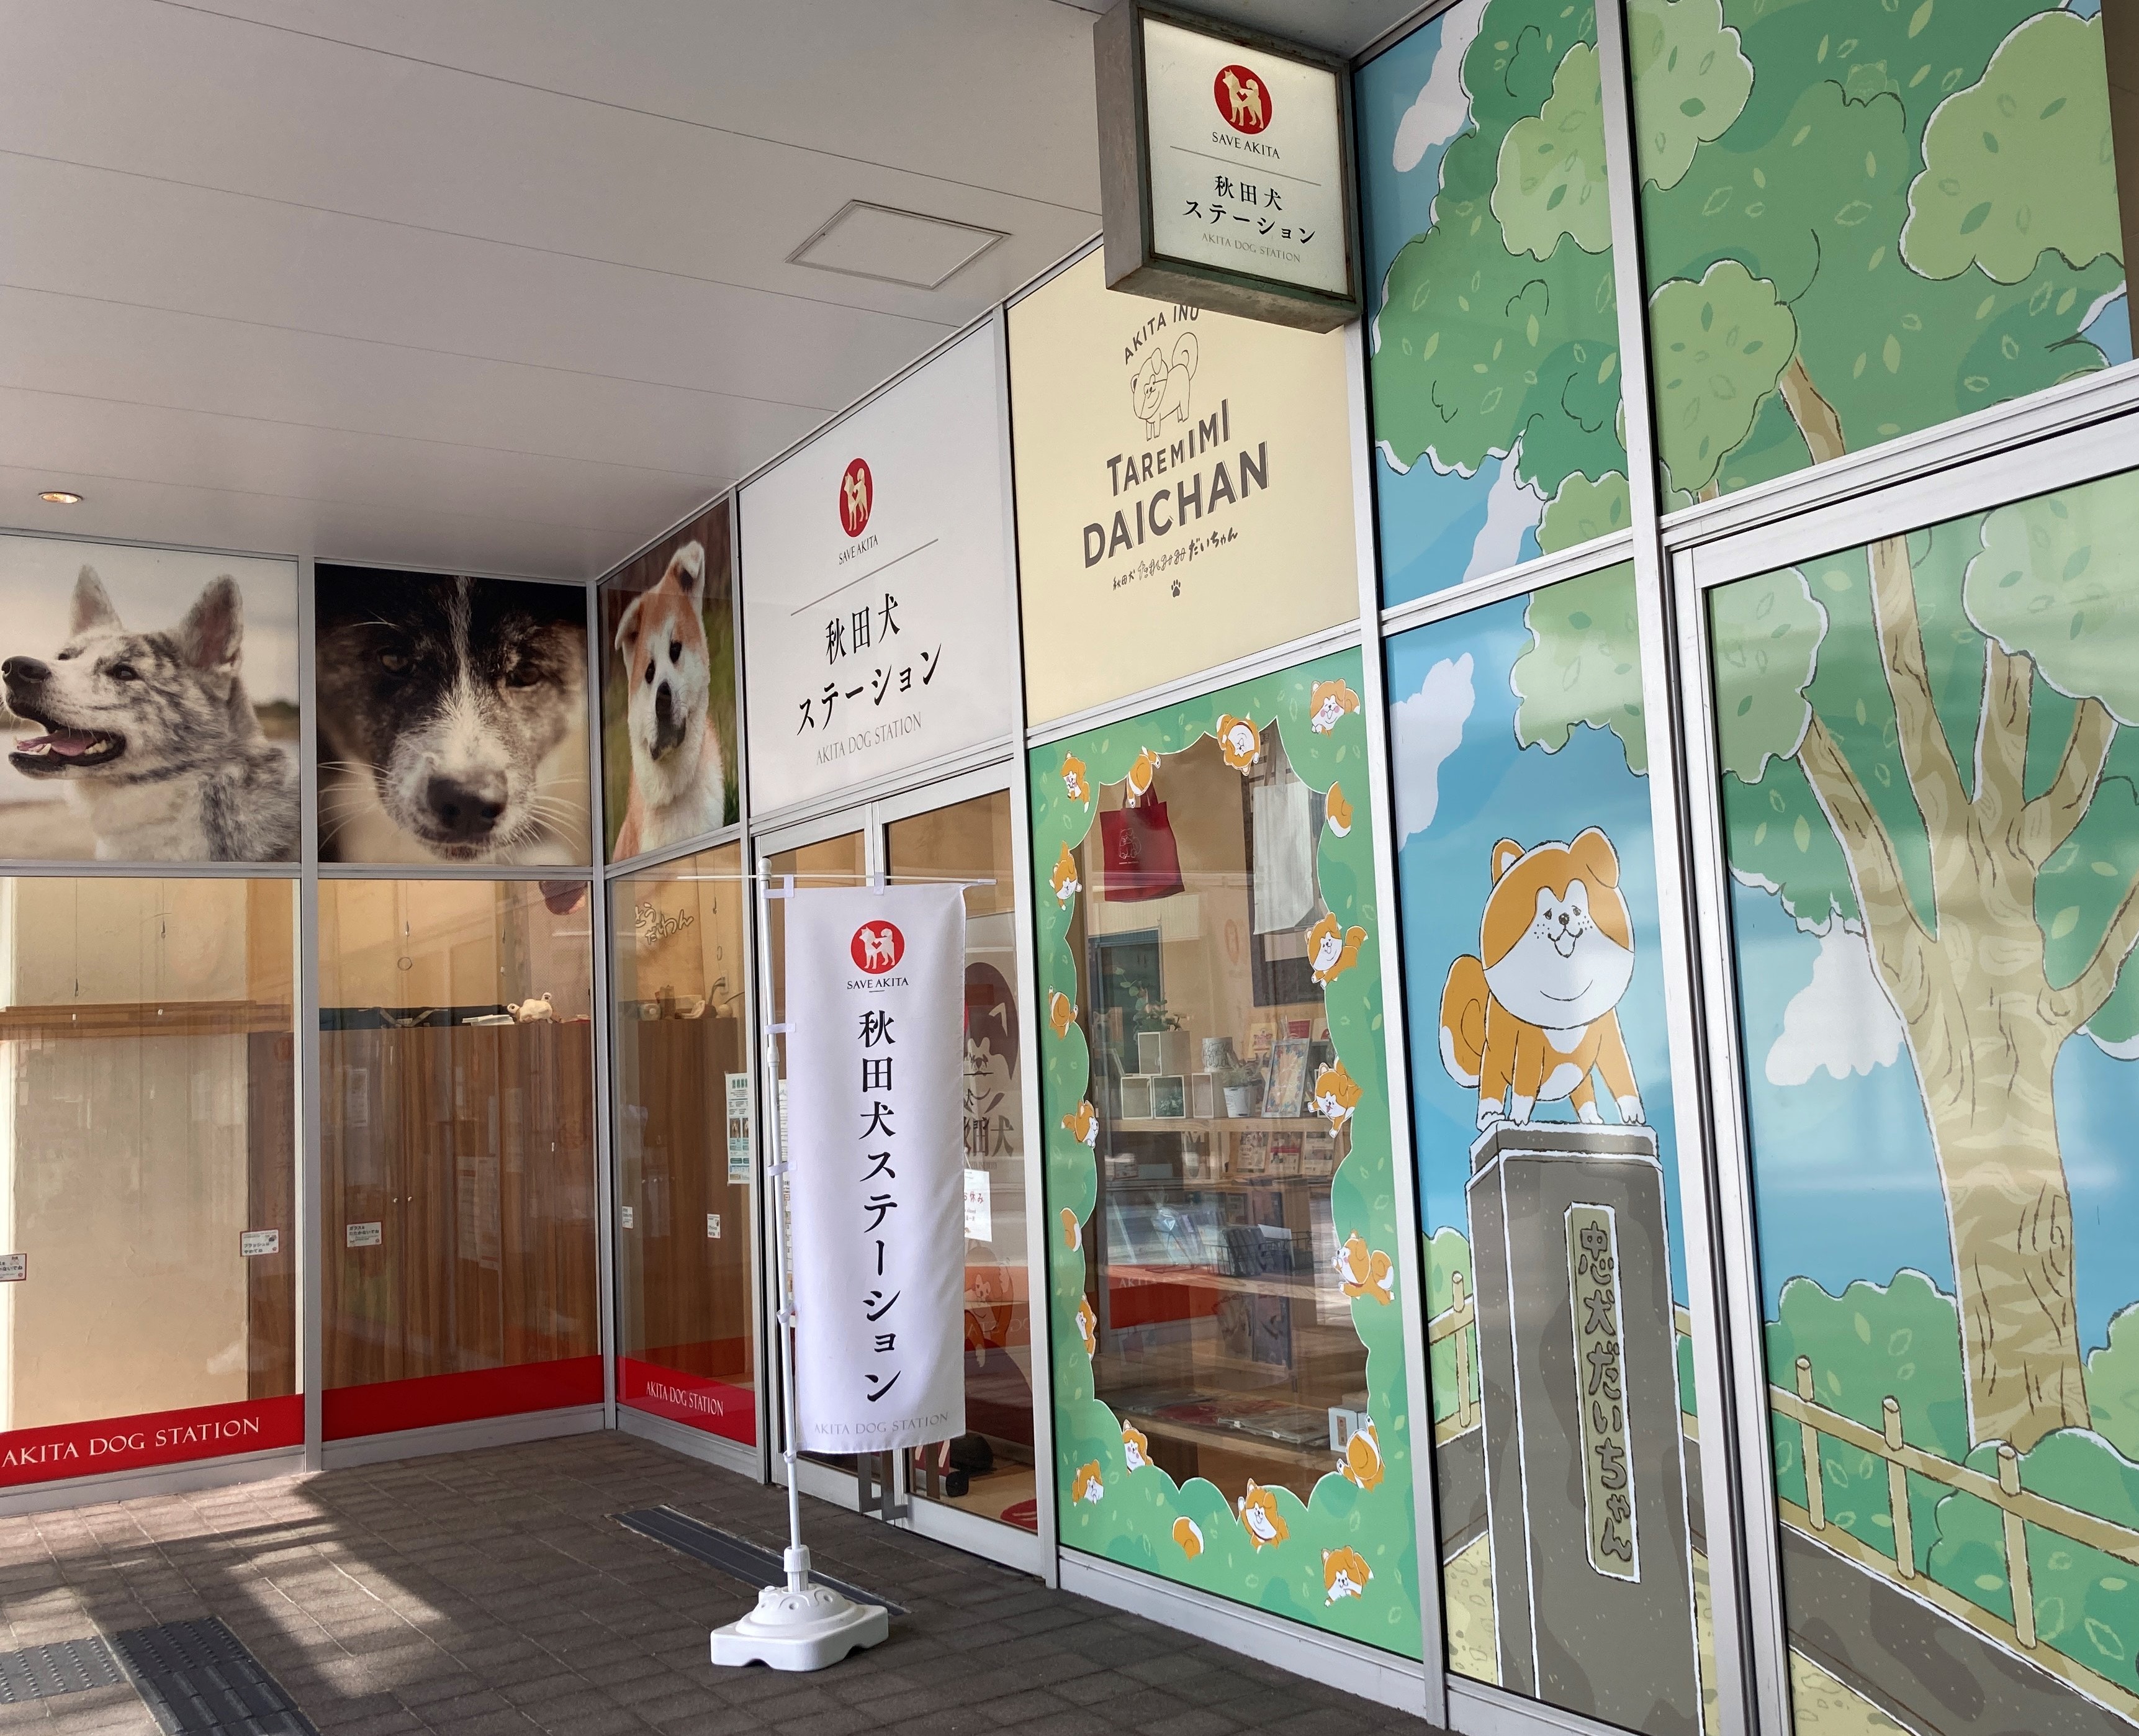 秋田犬ステーションと秋田犬サテライトステーションから、「秋田犬との交流」の時間変更と再開のお知らせです。